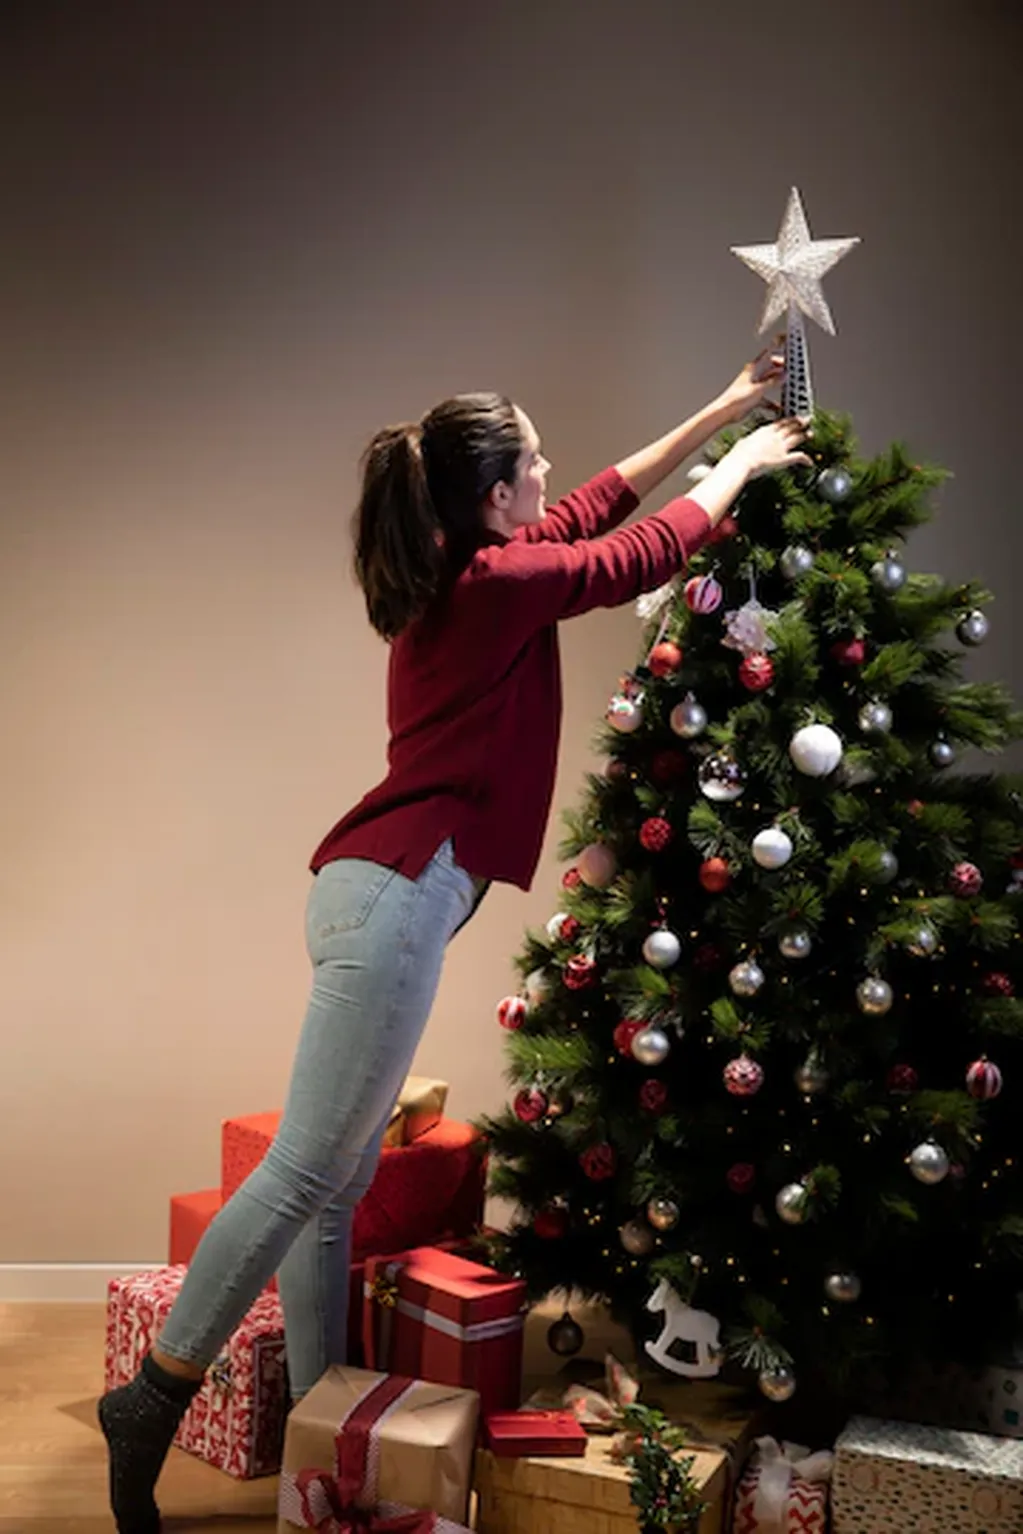 Durante las fiestas, el árbol de Navidad es uno de los elementos más tradicionales en la decoración.